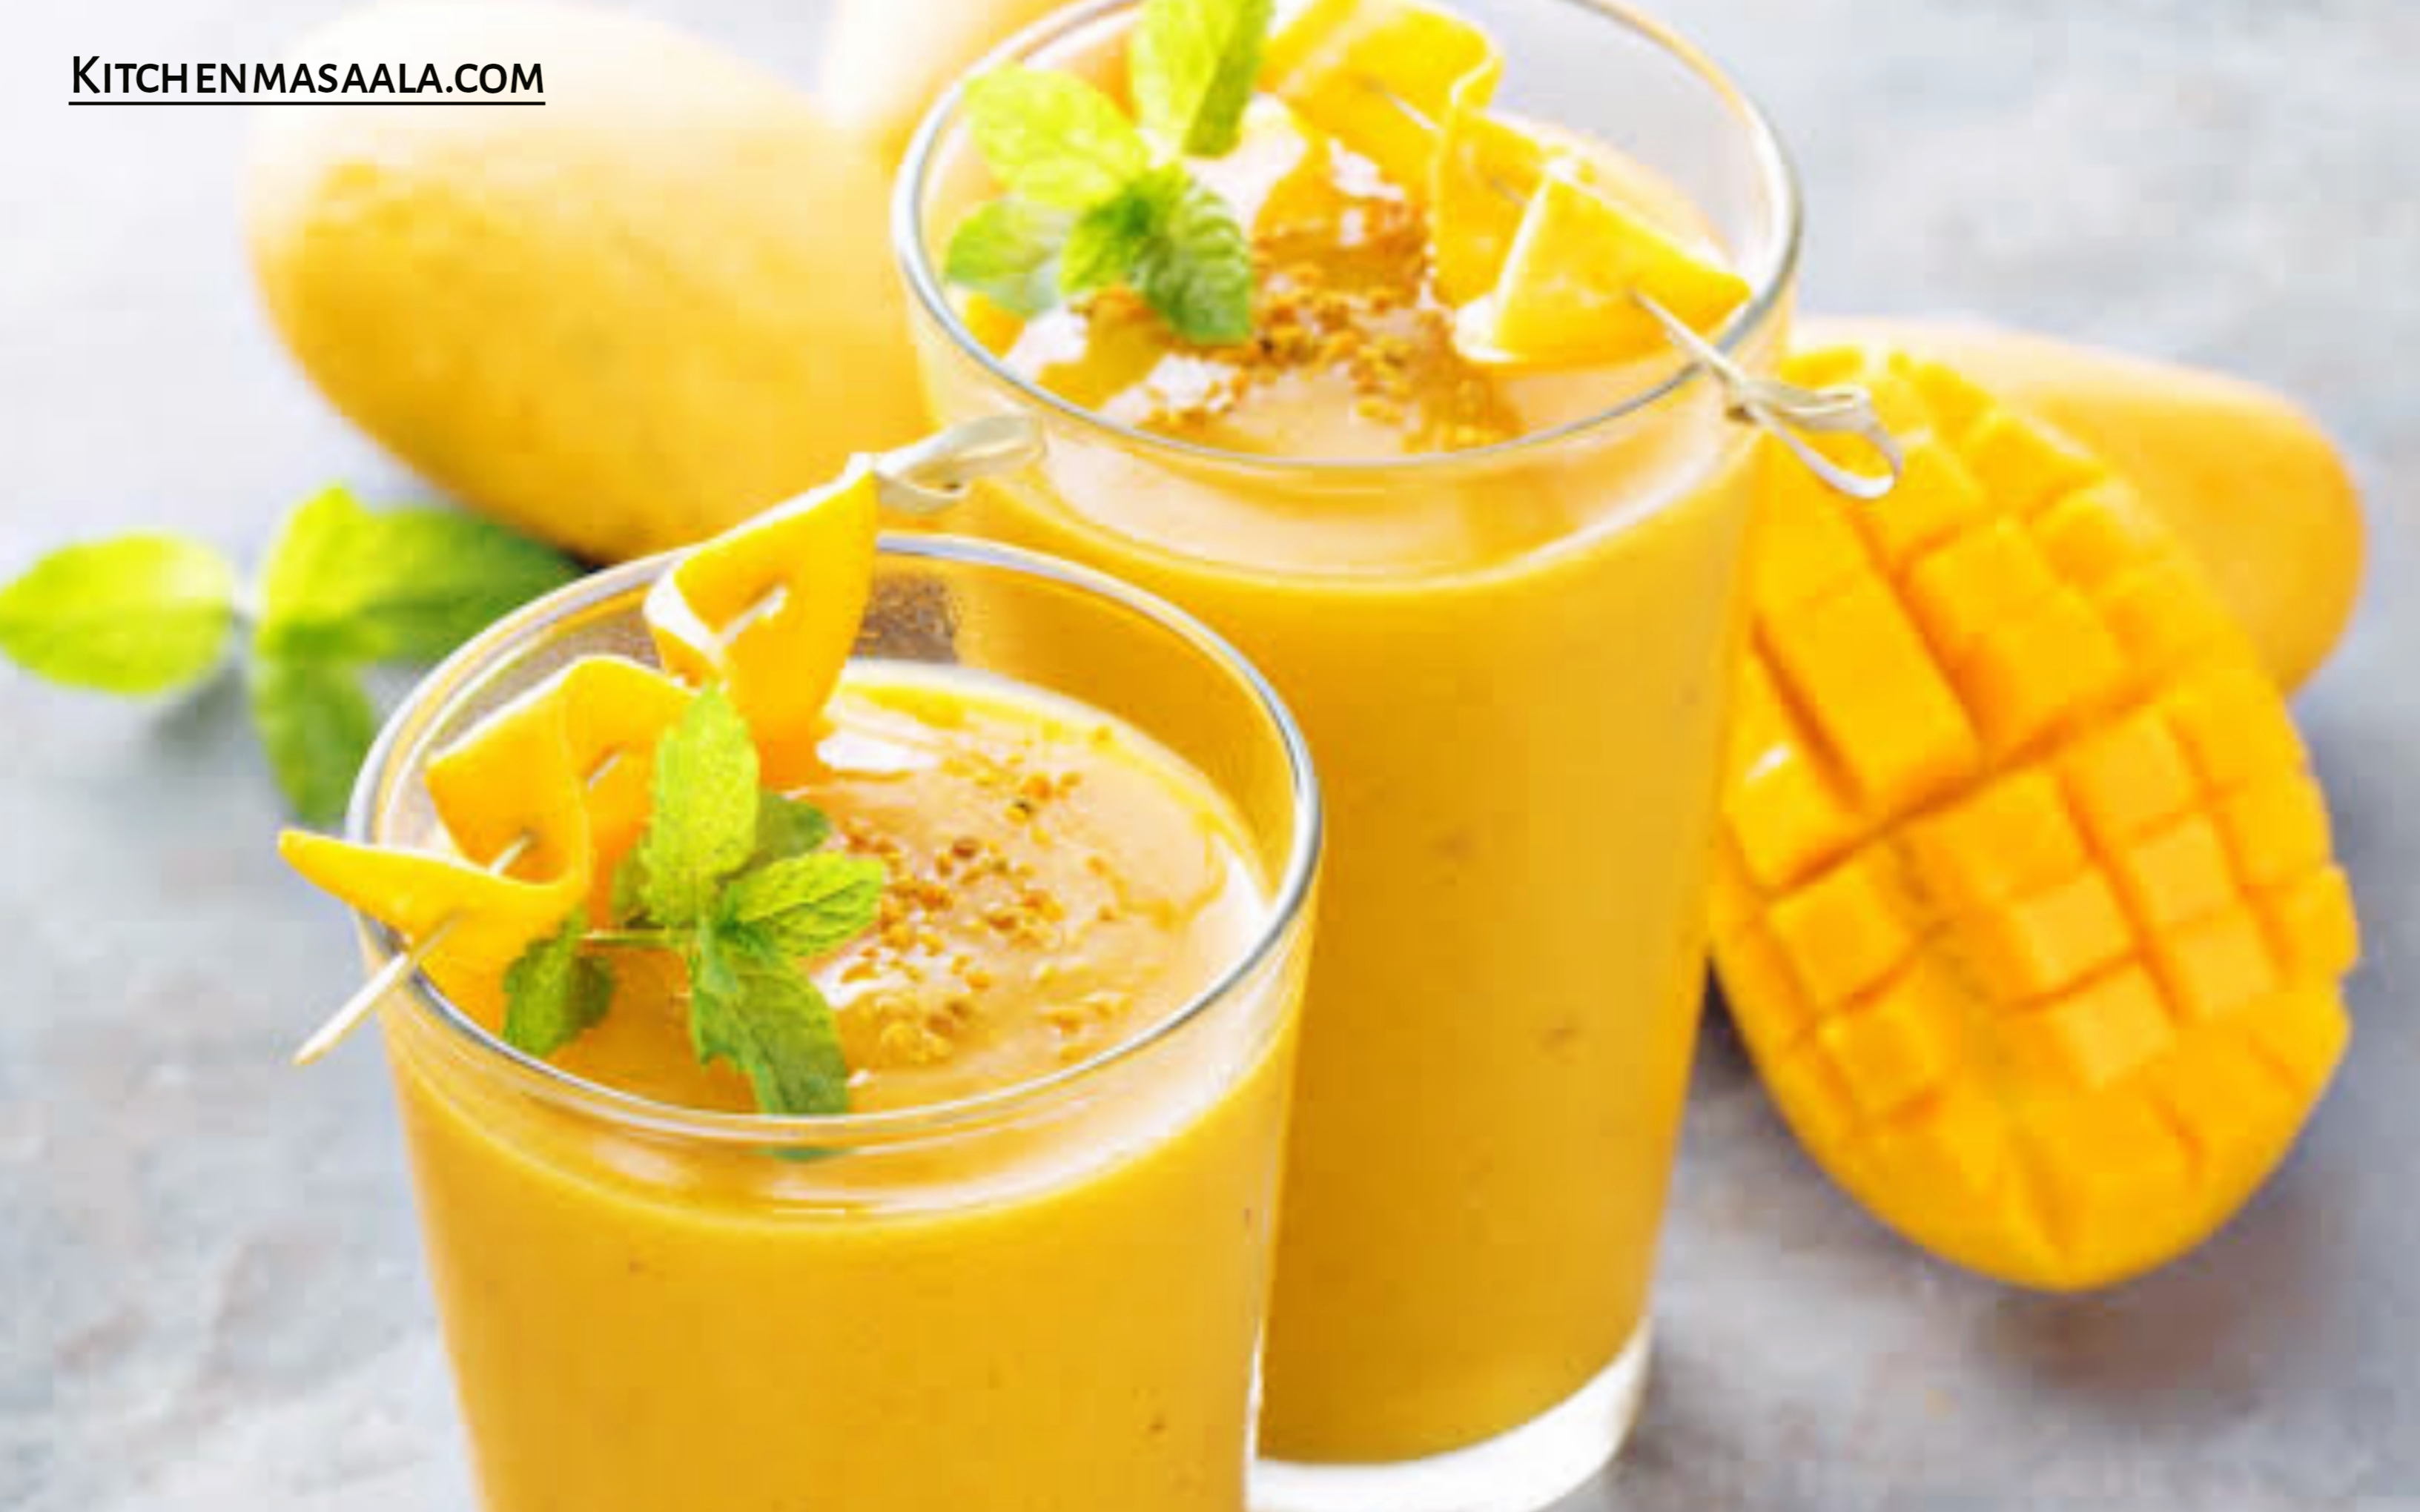 स्वादिष्ट और पौष्टिक मैंगो शेक बनाने की विधि || Mango shake recipe in Hindi, Mango shake image, मैंगो शेक फोटो, kitchenmasaala.com